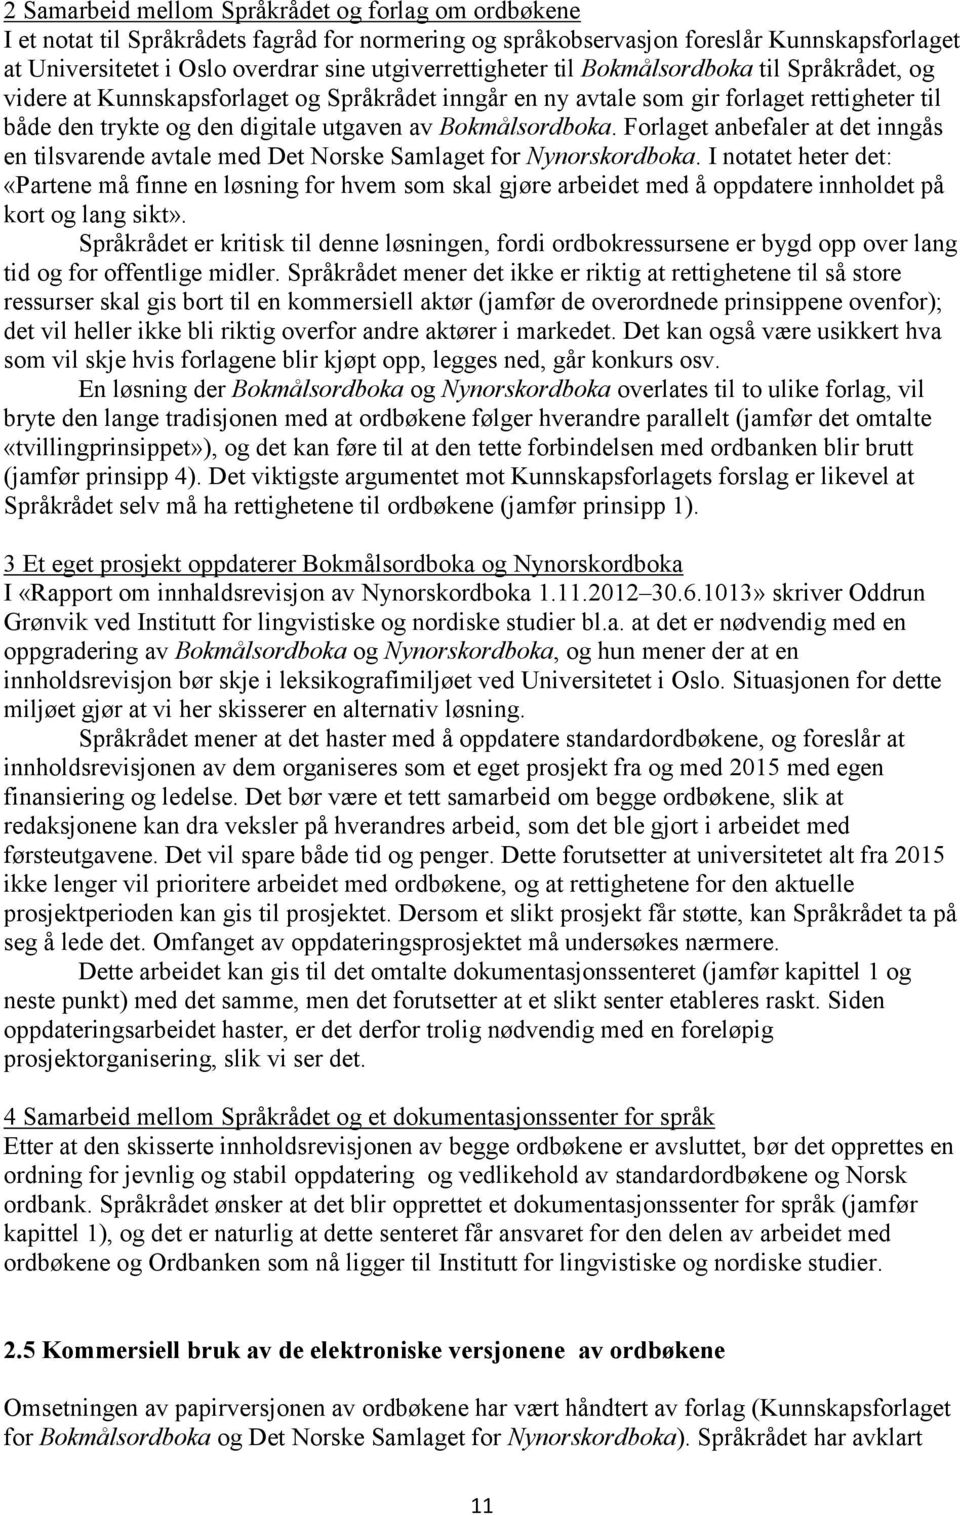 Bokmålsordboka. Forlaget anbefaler at det inngås en tilsvarende avtale med Det Norske Samlaget for Nynorskordboka.